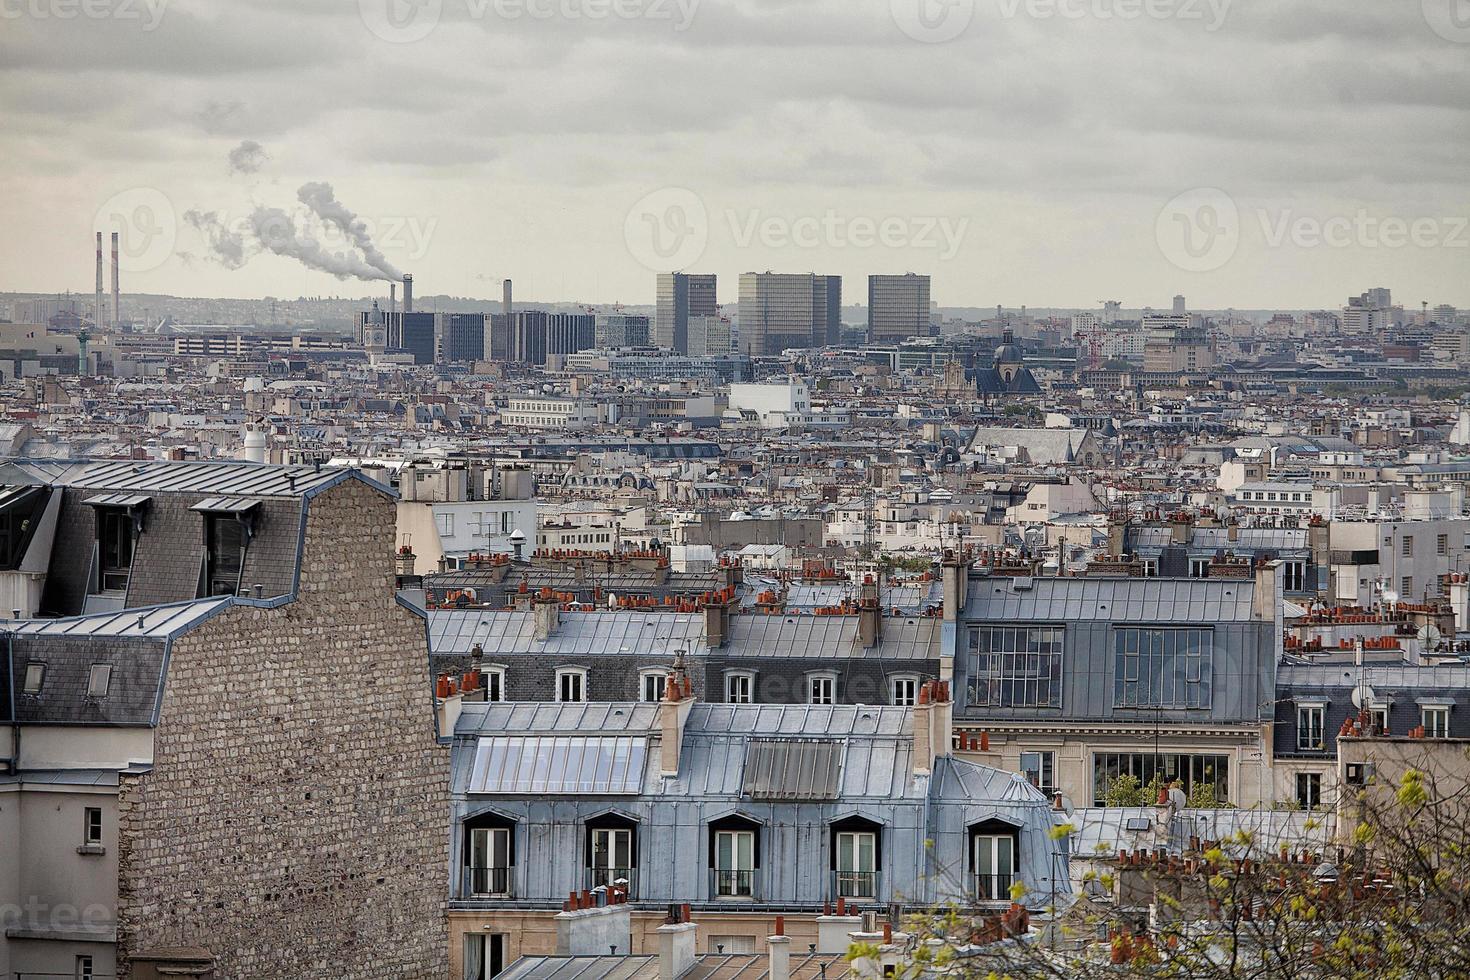 Parijs uitzicht foto